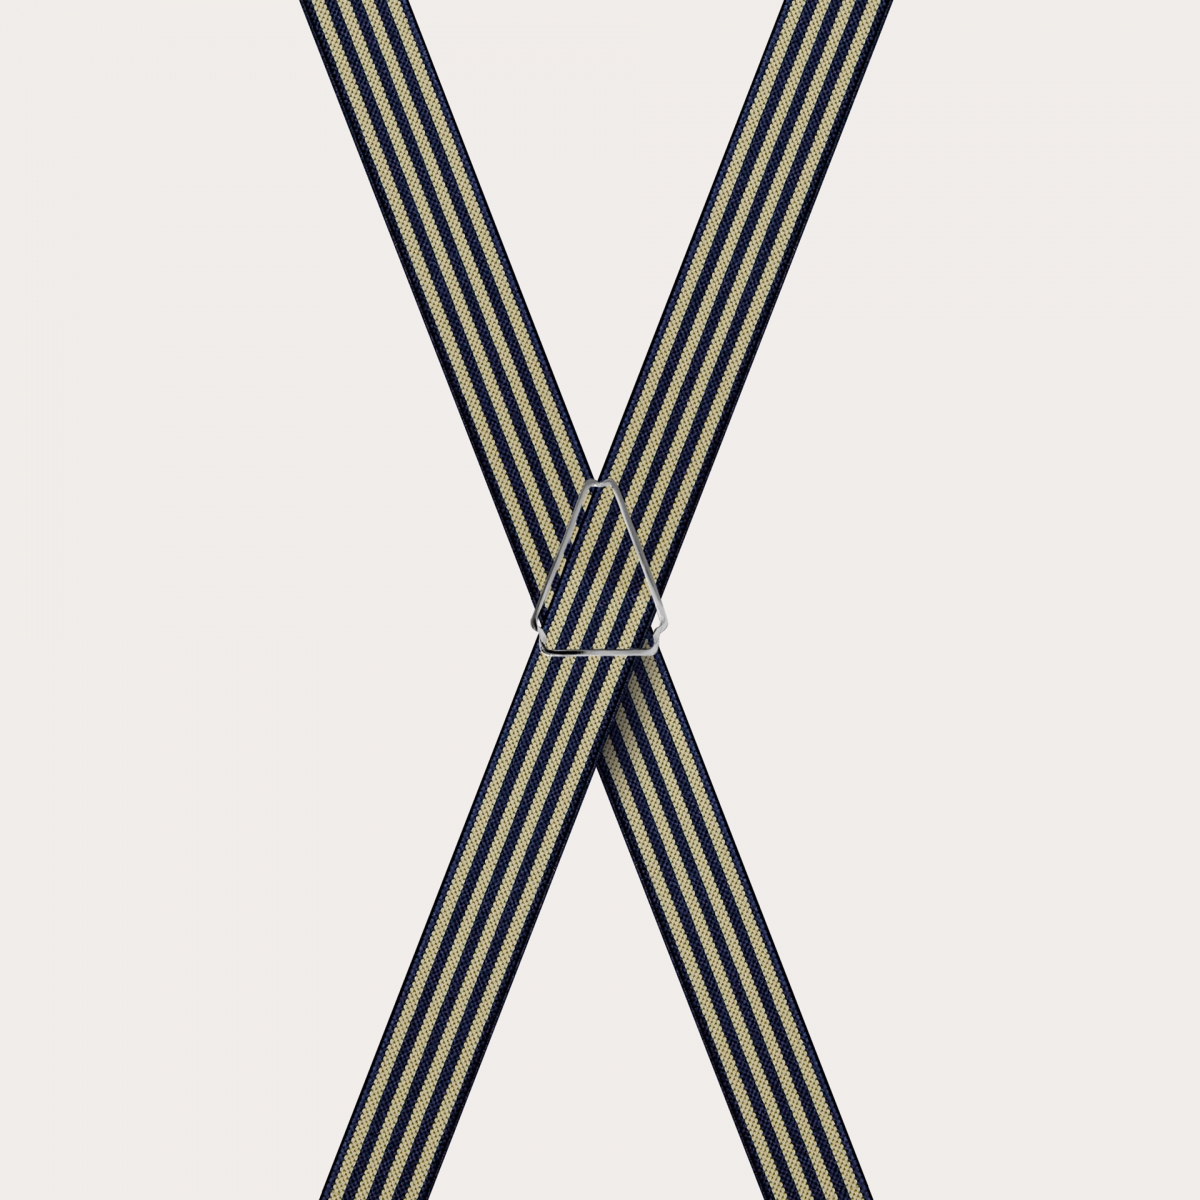 BRUCLE Tirantes en forma de X para niños y adolescentes con estampado de rayas, azul y amarillo